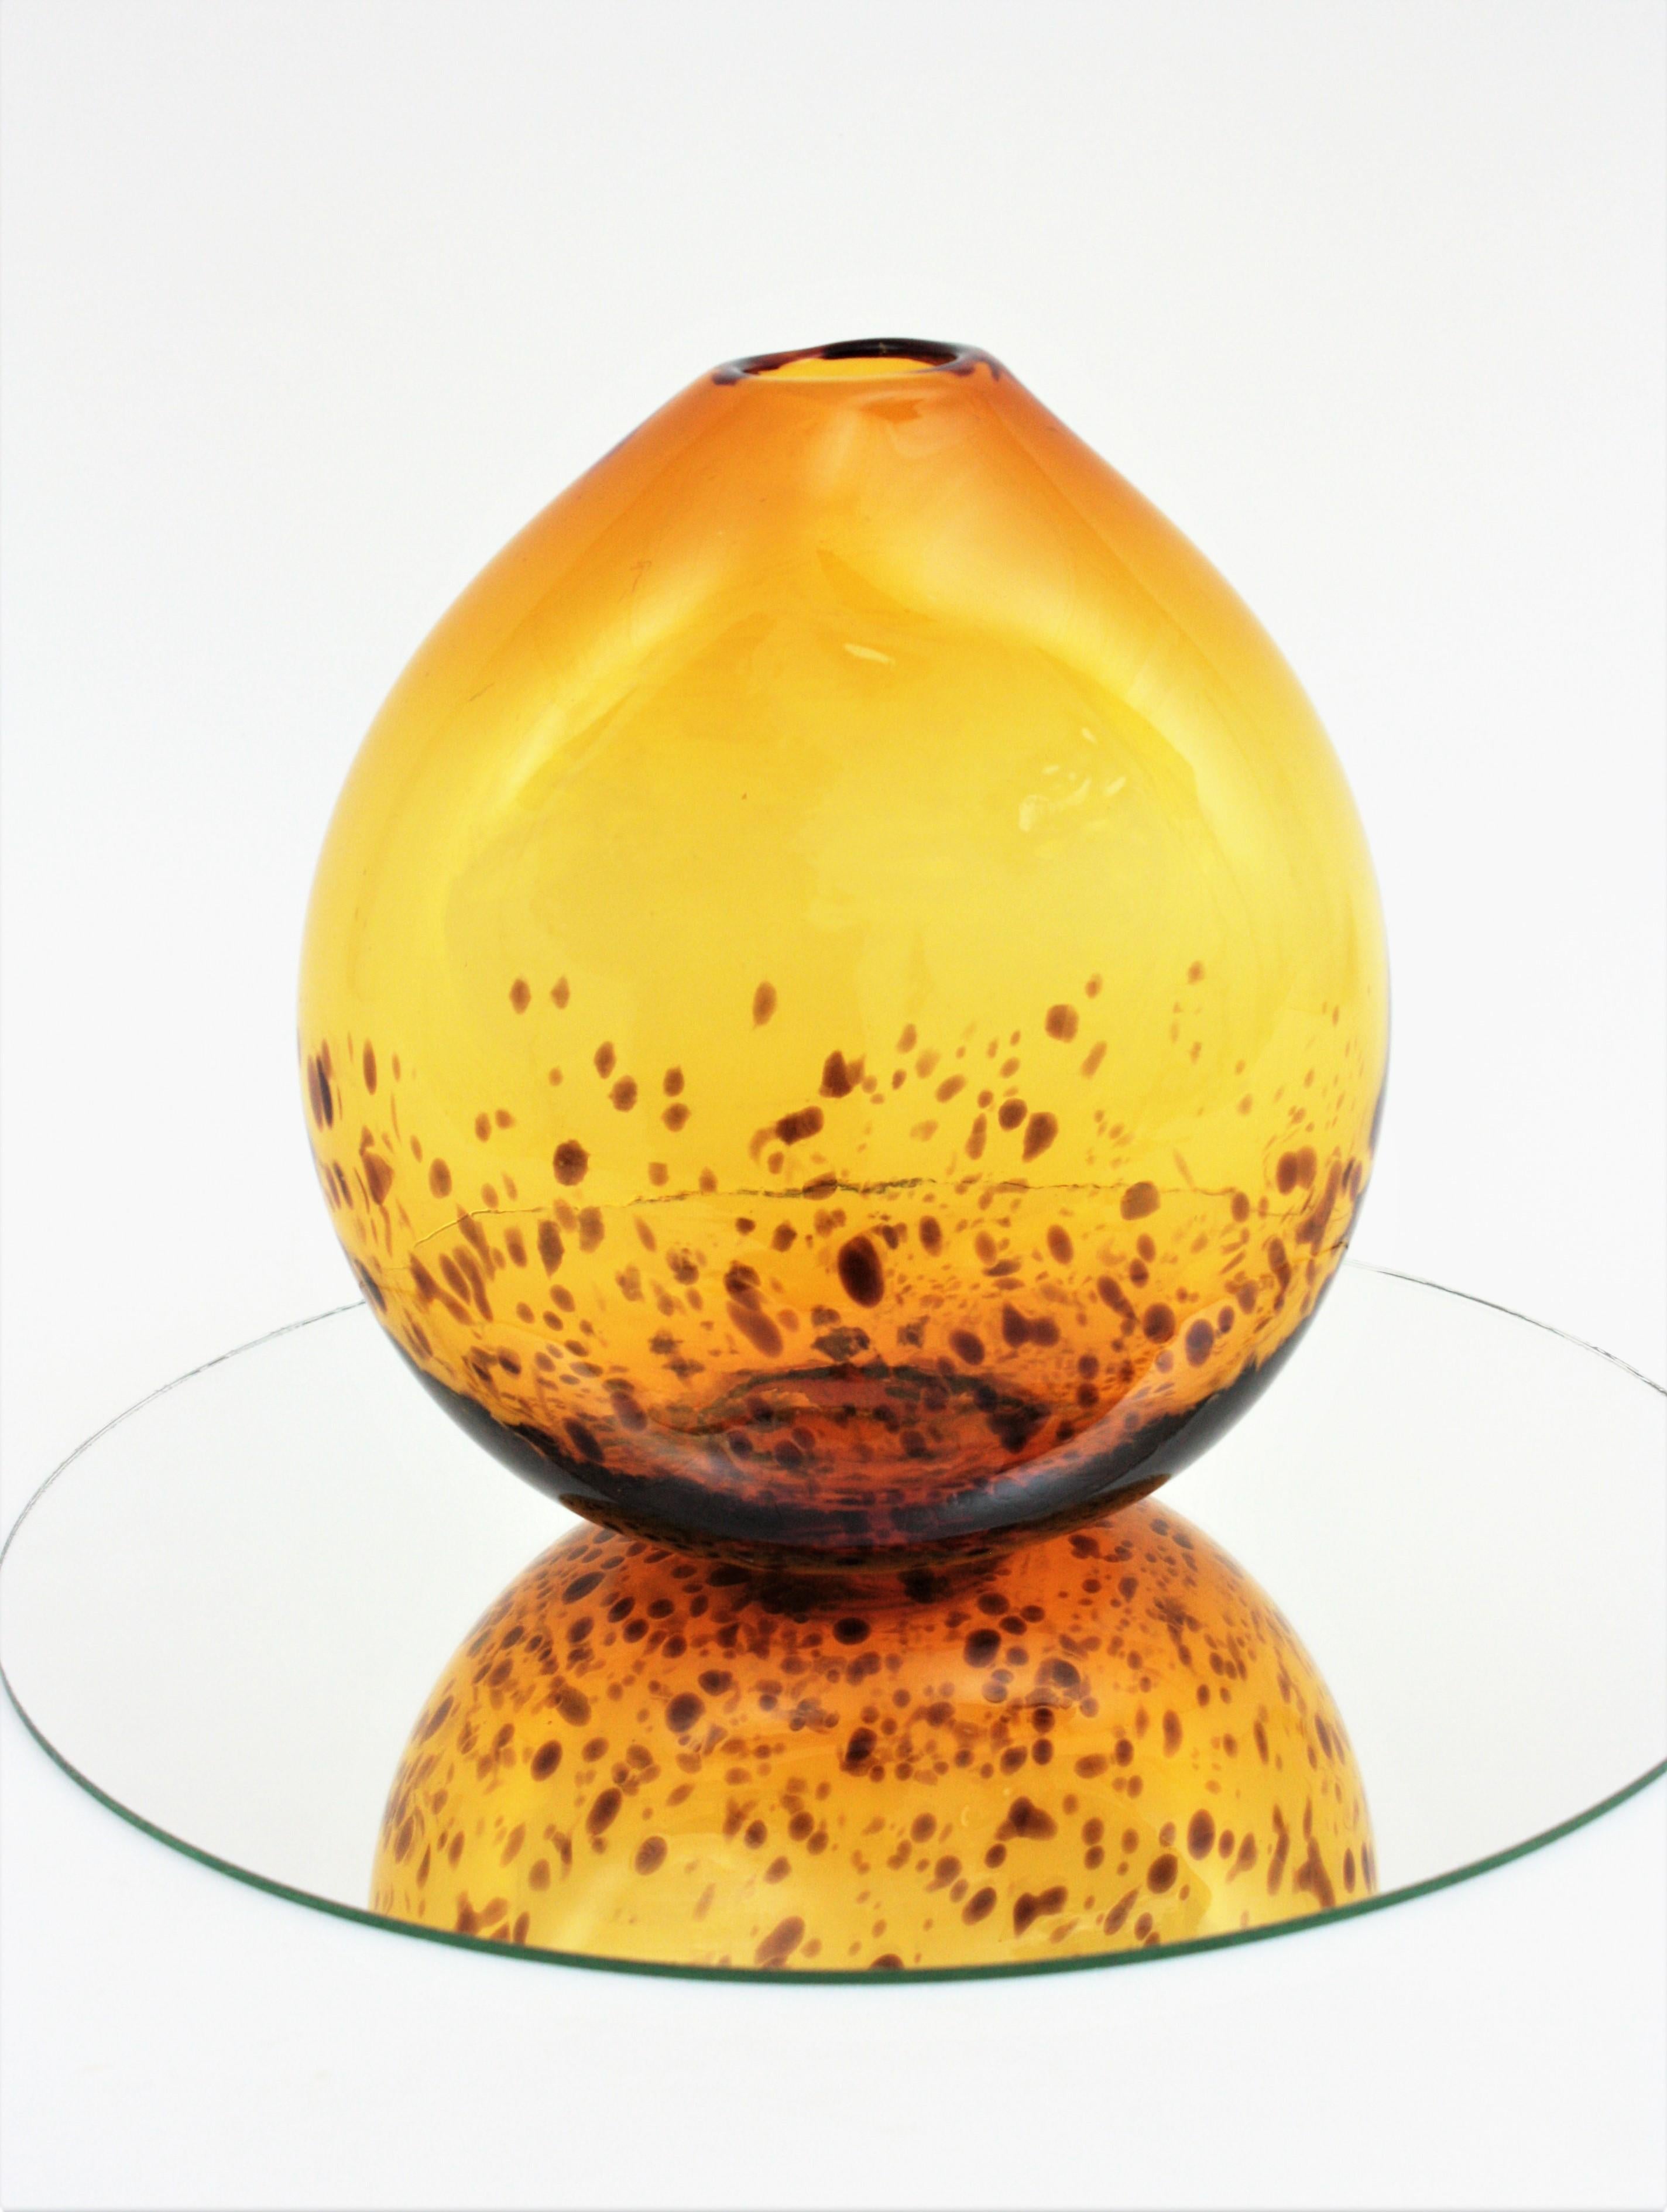 Auffällige eiförmige Kunstglasvase 'Tartaruga' aus der Mitte des Jahrhunderts. Hergestellt von Empoli, Italien, 1960er Jahre.
Diese mundgeblasene Empoli-Glasvase hat ein schönes Design mit eiförmiger Form, leuchtender Farbe und Schildpattmuster.